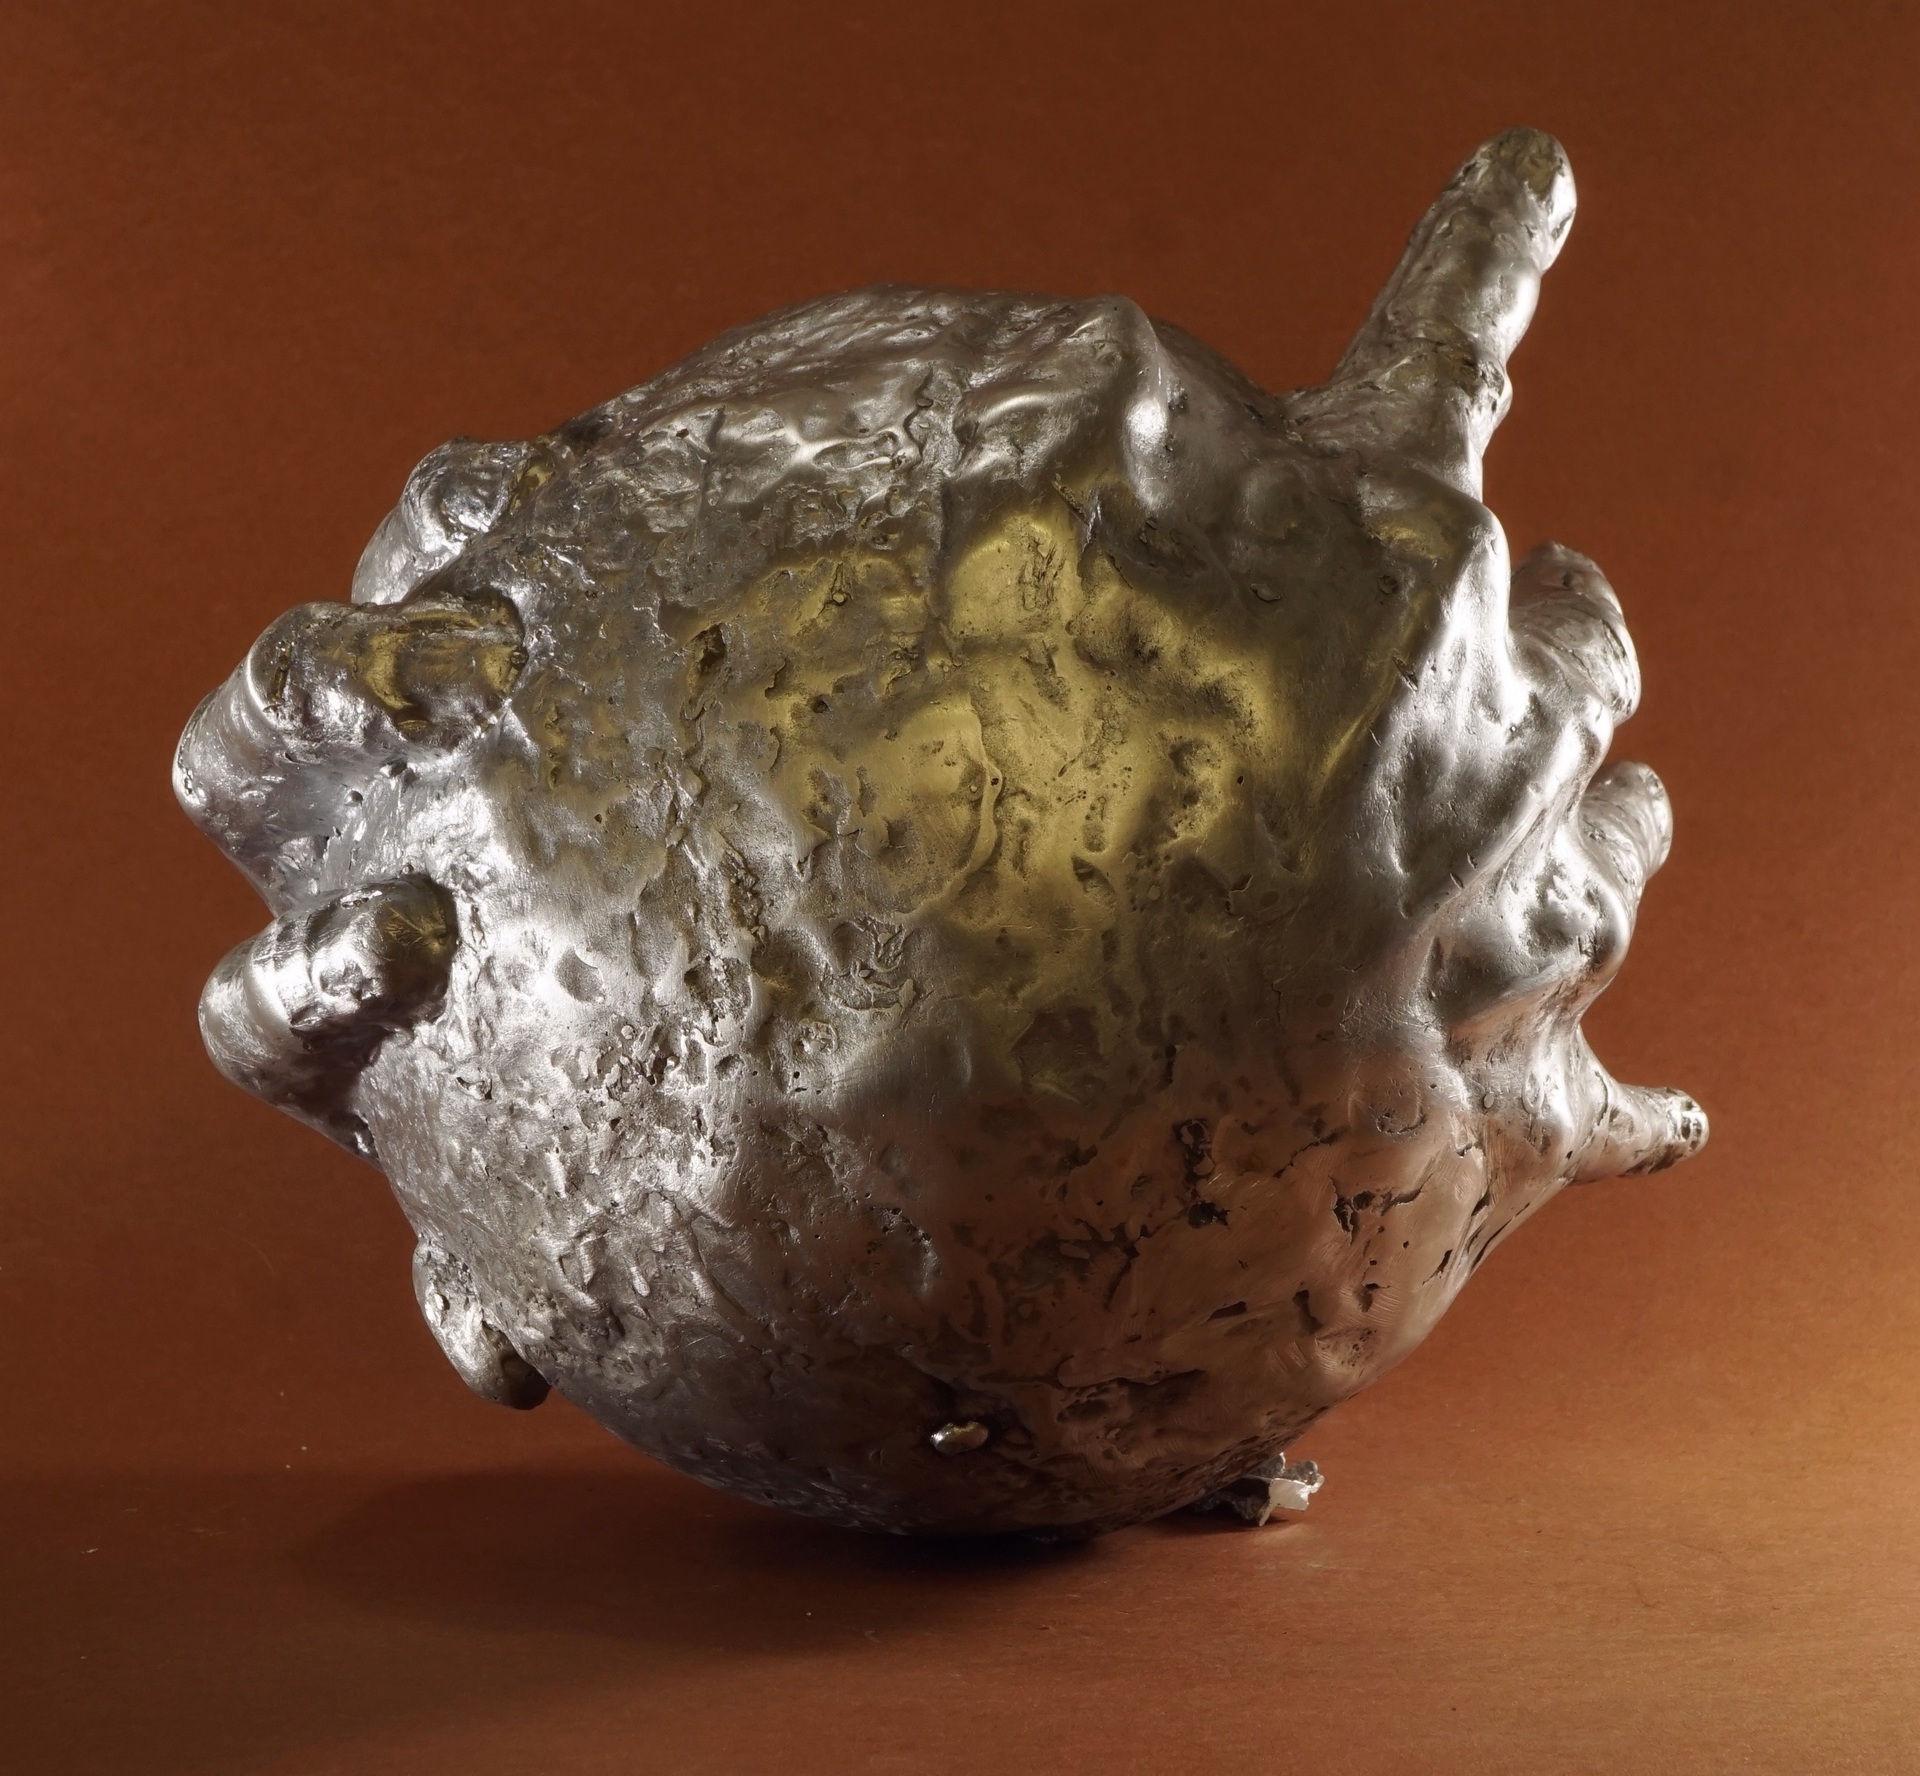 Anna Mandziak - zdjęcie przedstawiające rzeźbę kuli obejmowaną dłońmi, wykonaną z aluminium. 